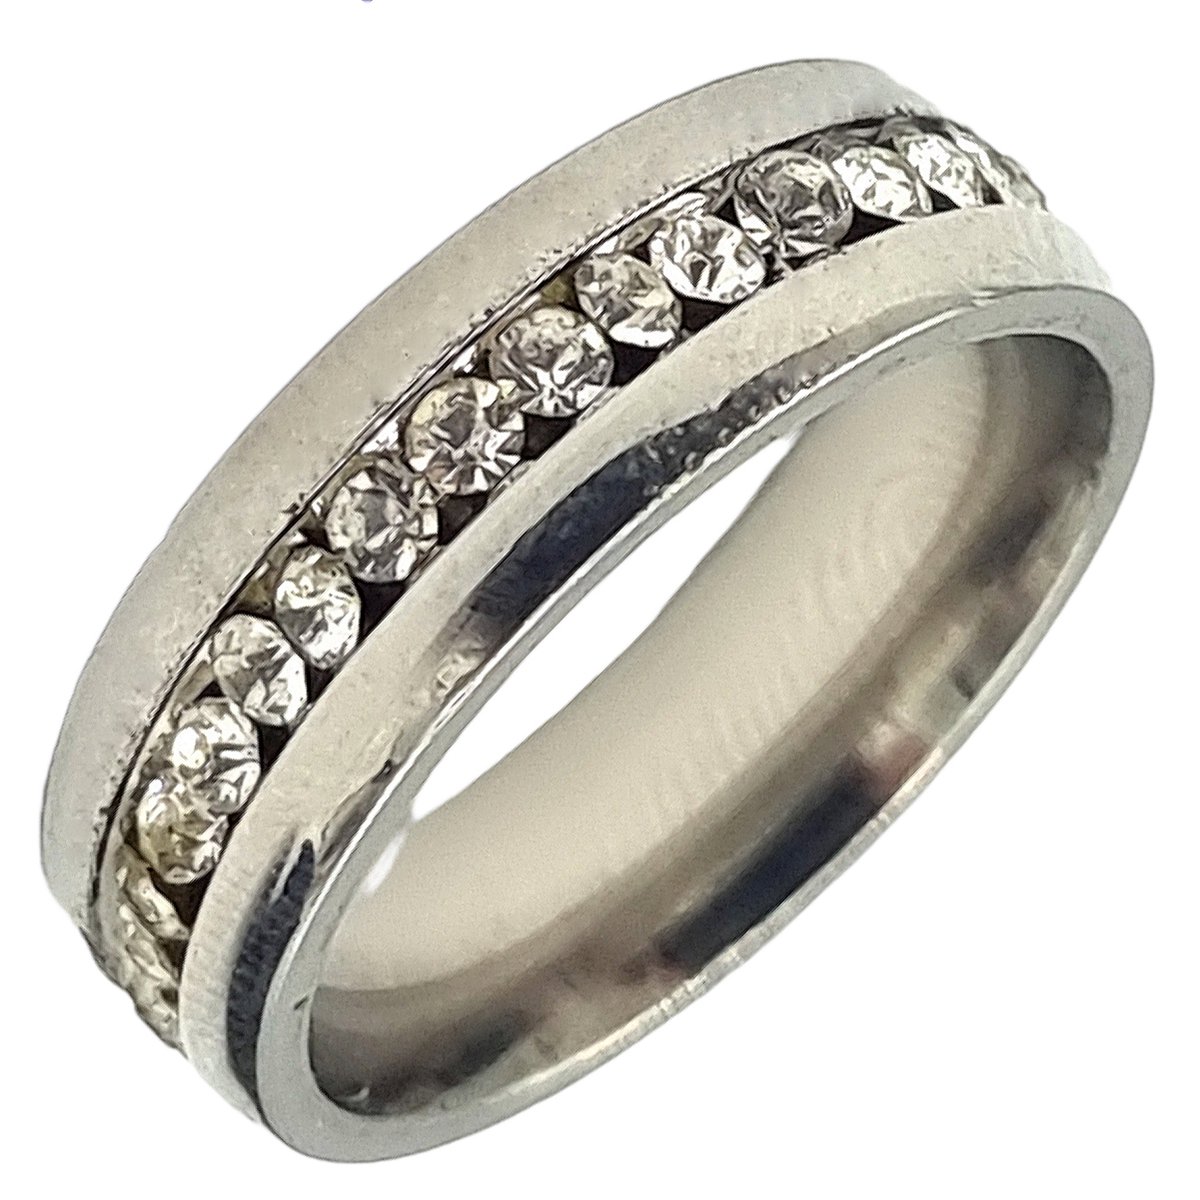 Tesoro Mio Michel – Dames Ring Voor Vrouw – Staal In Kleur Zilver – Met Zirkonia Stenen – 19 mm / Maat 60